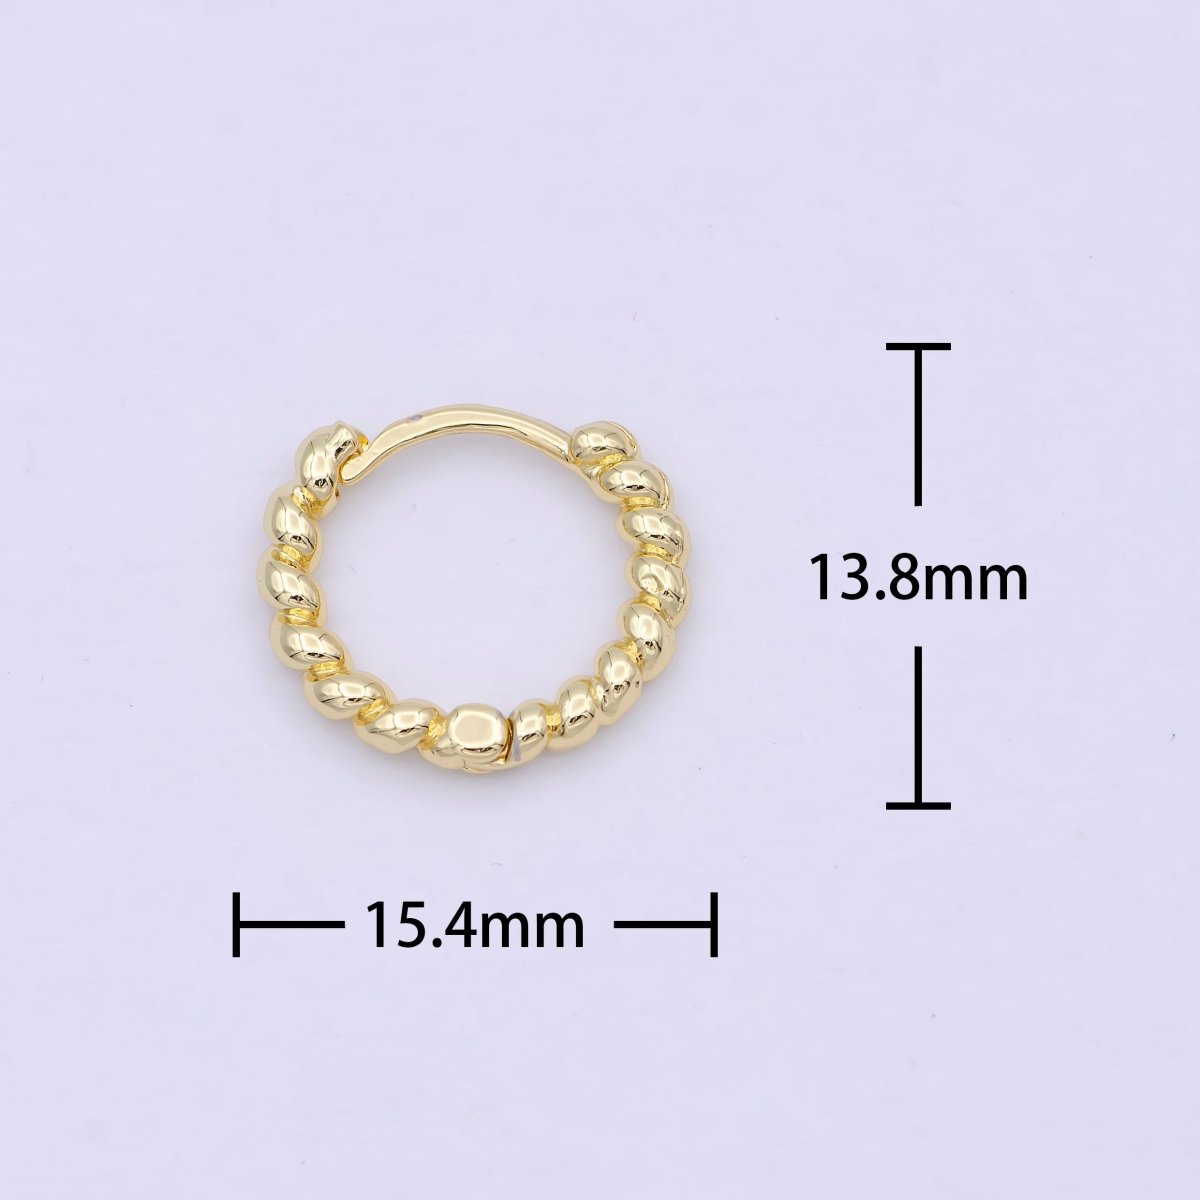 Tiny braided Hoop earrings - Twisted hoop earrings - Gold braided hoop earrings 14k Gold Fill earring P-254 - DLUXCA